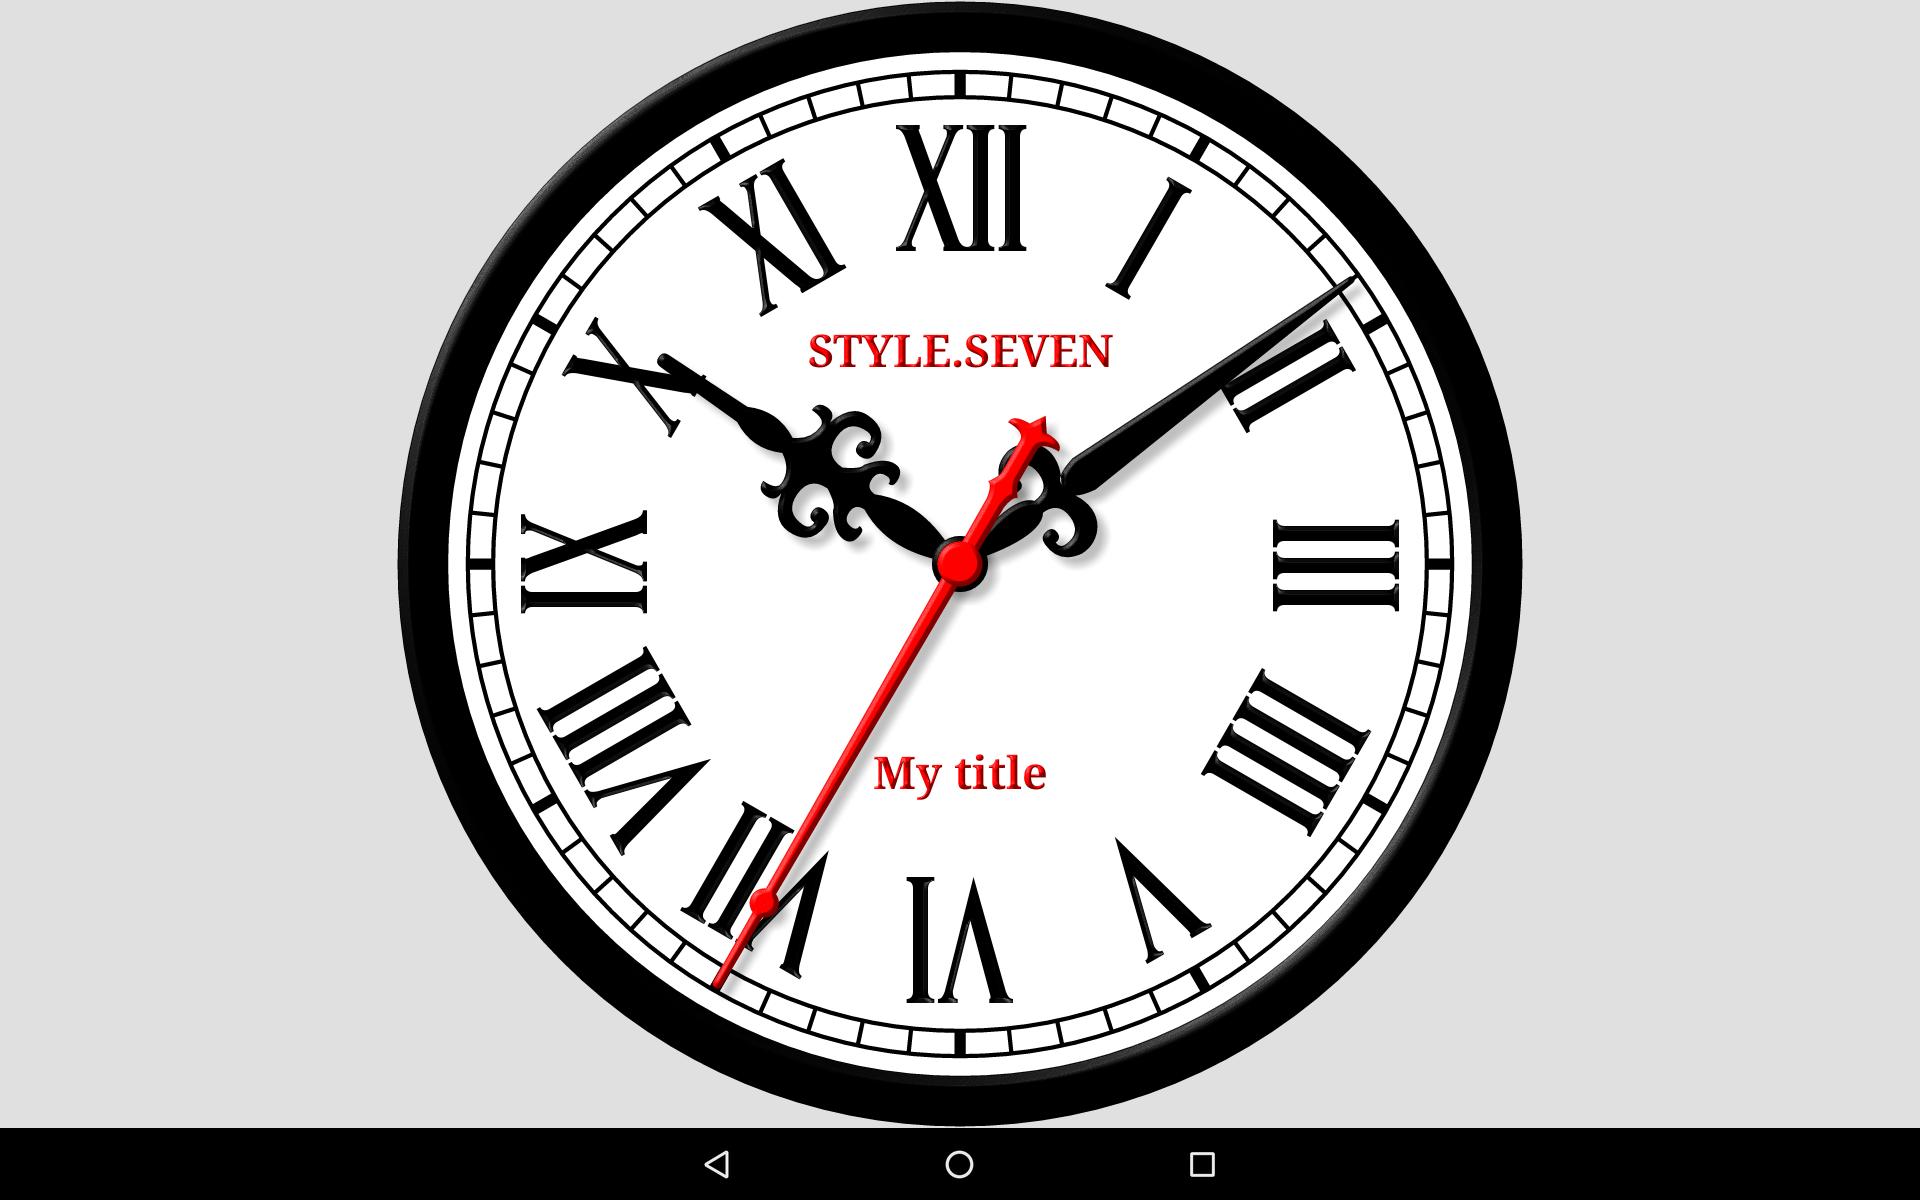 Часы 7 версия. 07:07 Часы. Часы 7 часов. Часы аналог. Картинки с аналоговыми часами.